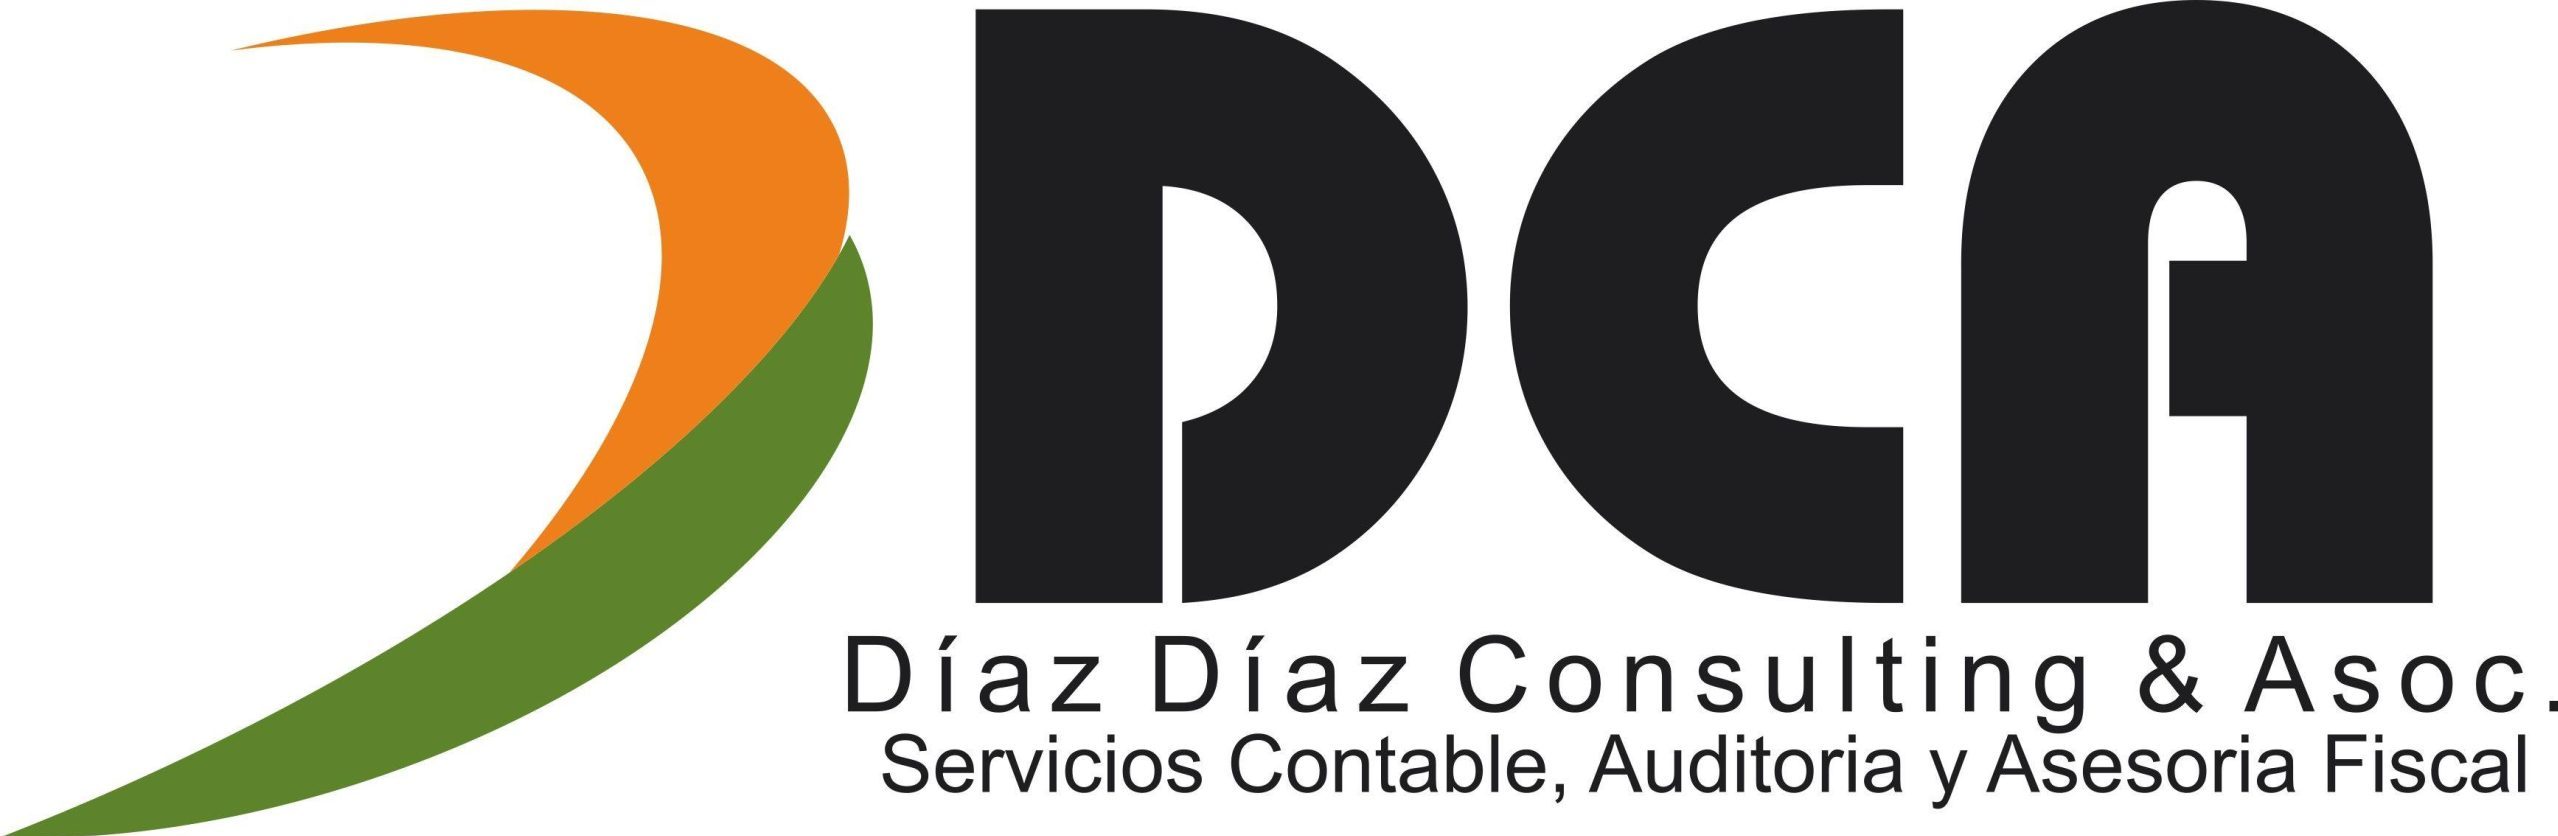 Diaz Diaz Consulting